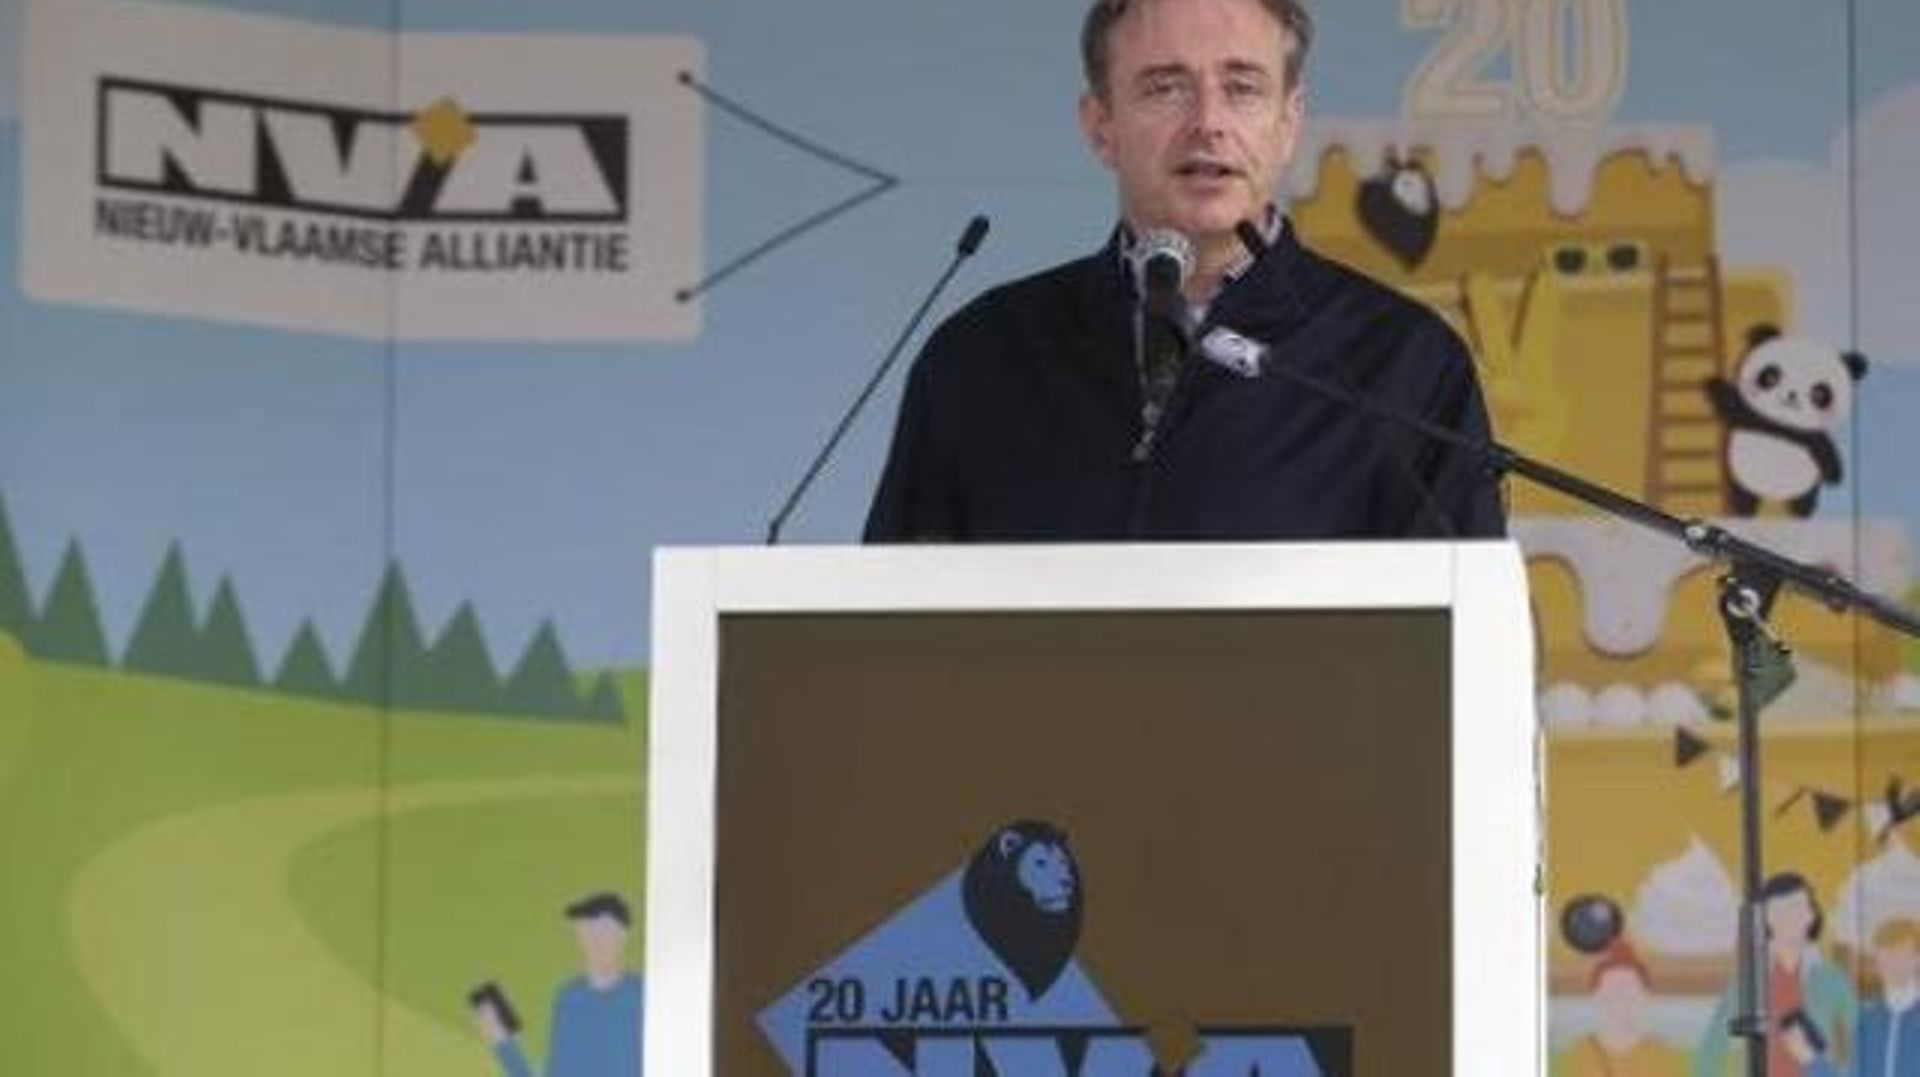 Pour Bart De Wever, "le moment est venu" pour le confédéralisme: "Plus personne ne pourra accorder de crédibilité au gouvernement fédéral"